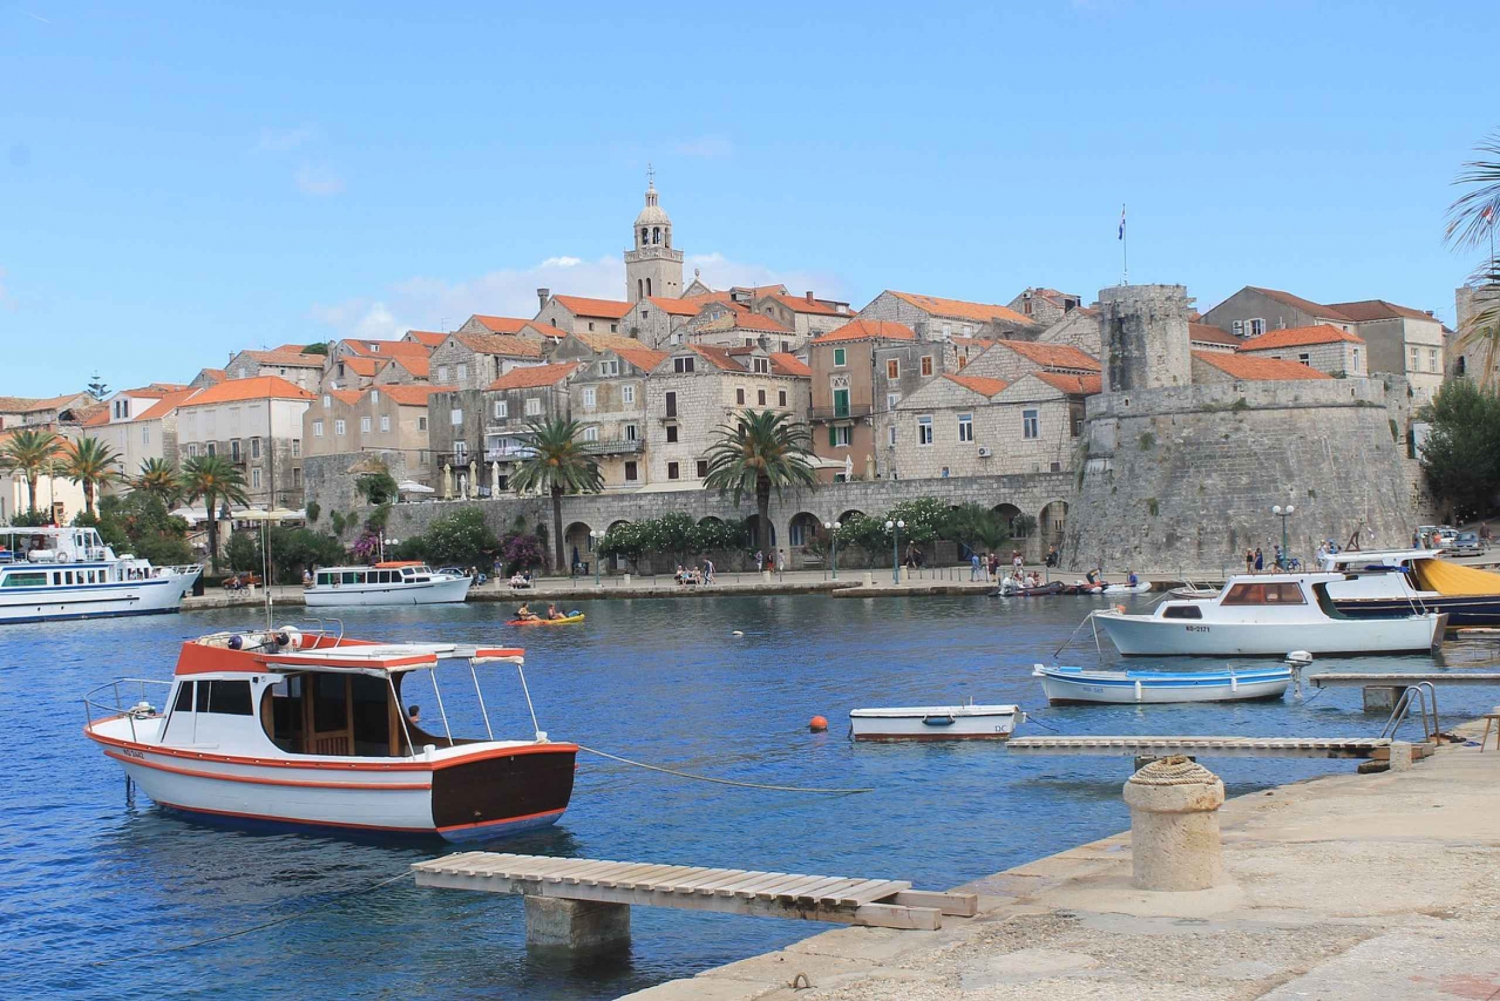 De Dubrovnik: visite de l'île de Korcula avec dégustation de vin